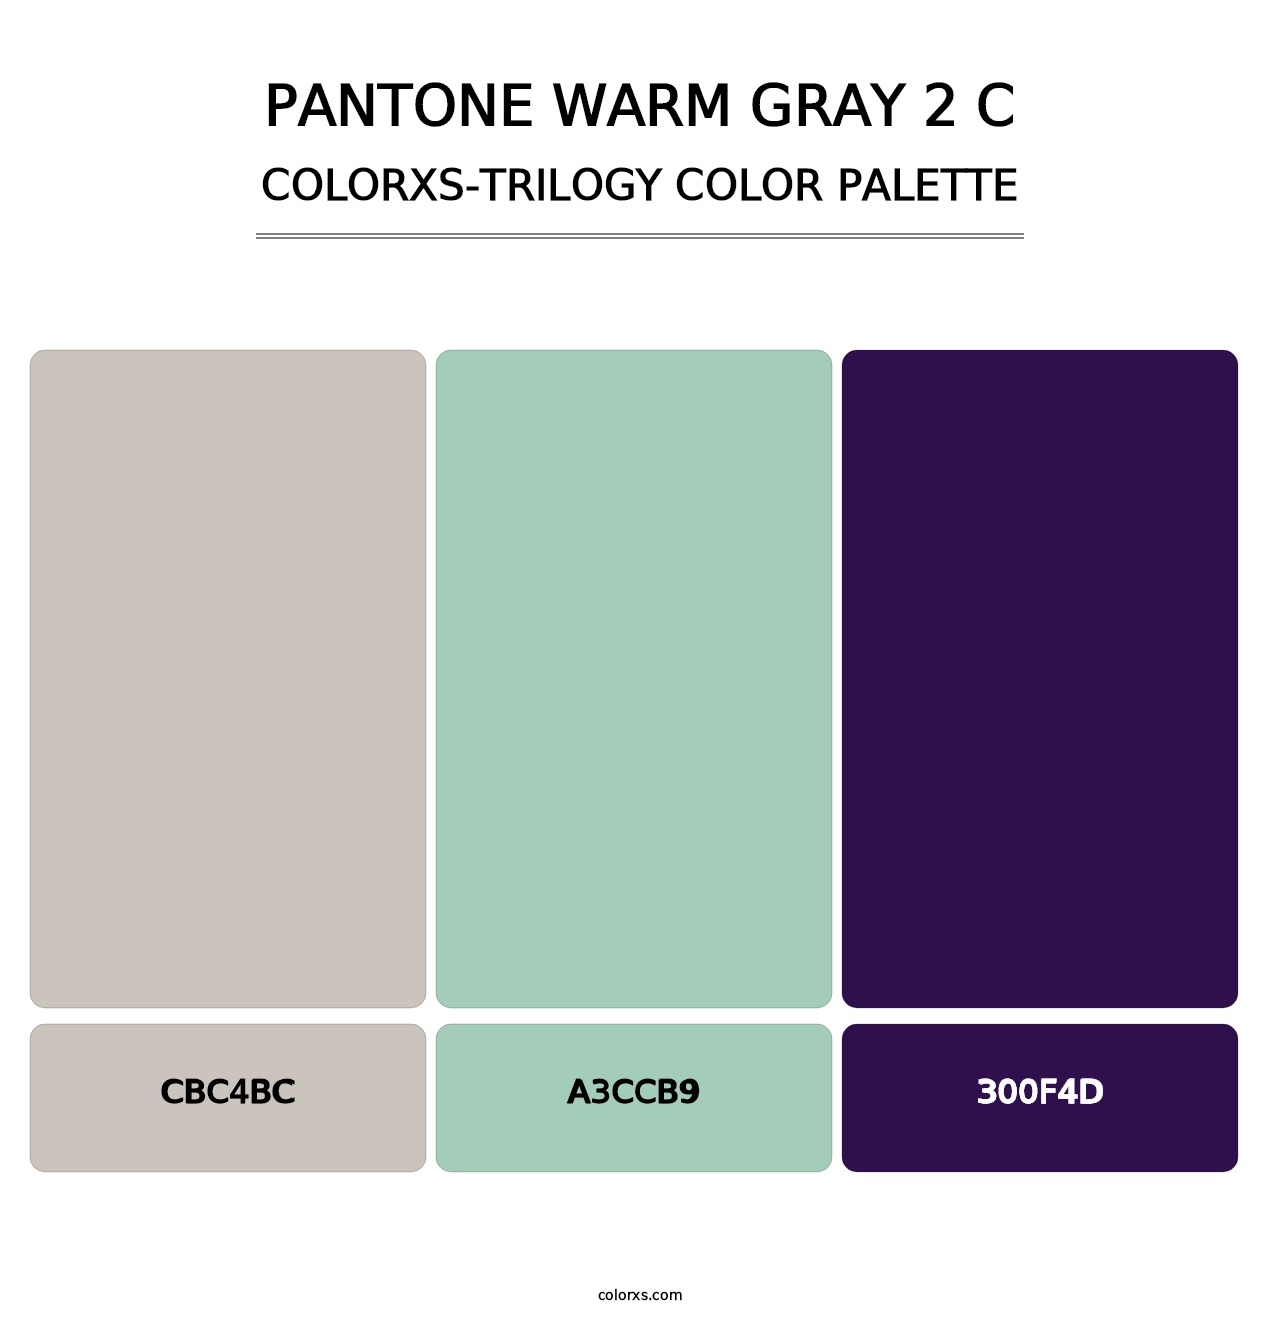 PANTONE Warm Gray 2 C - Colorxs Trilogy Palette